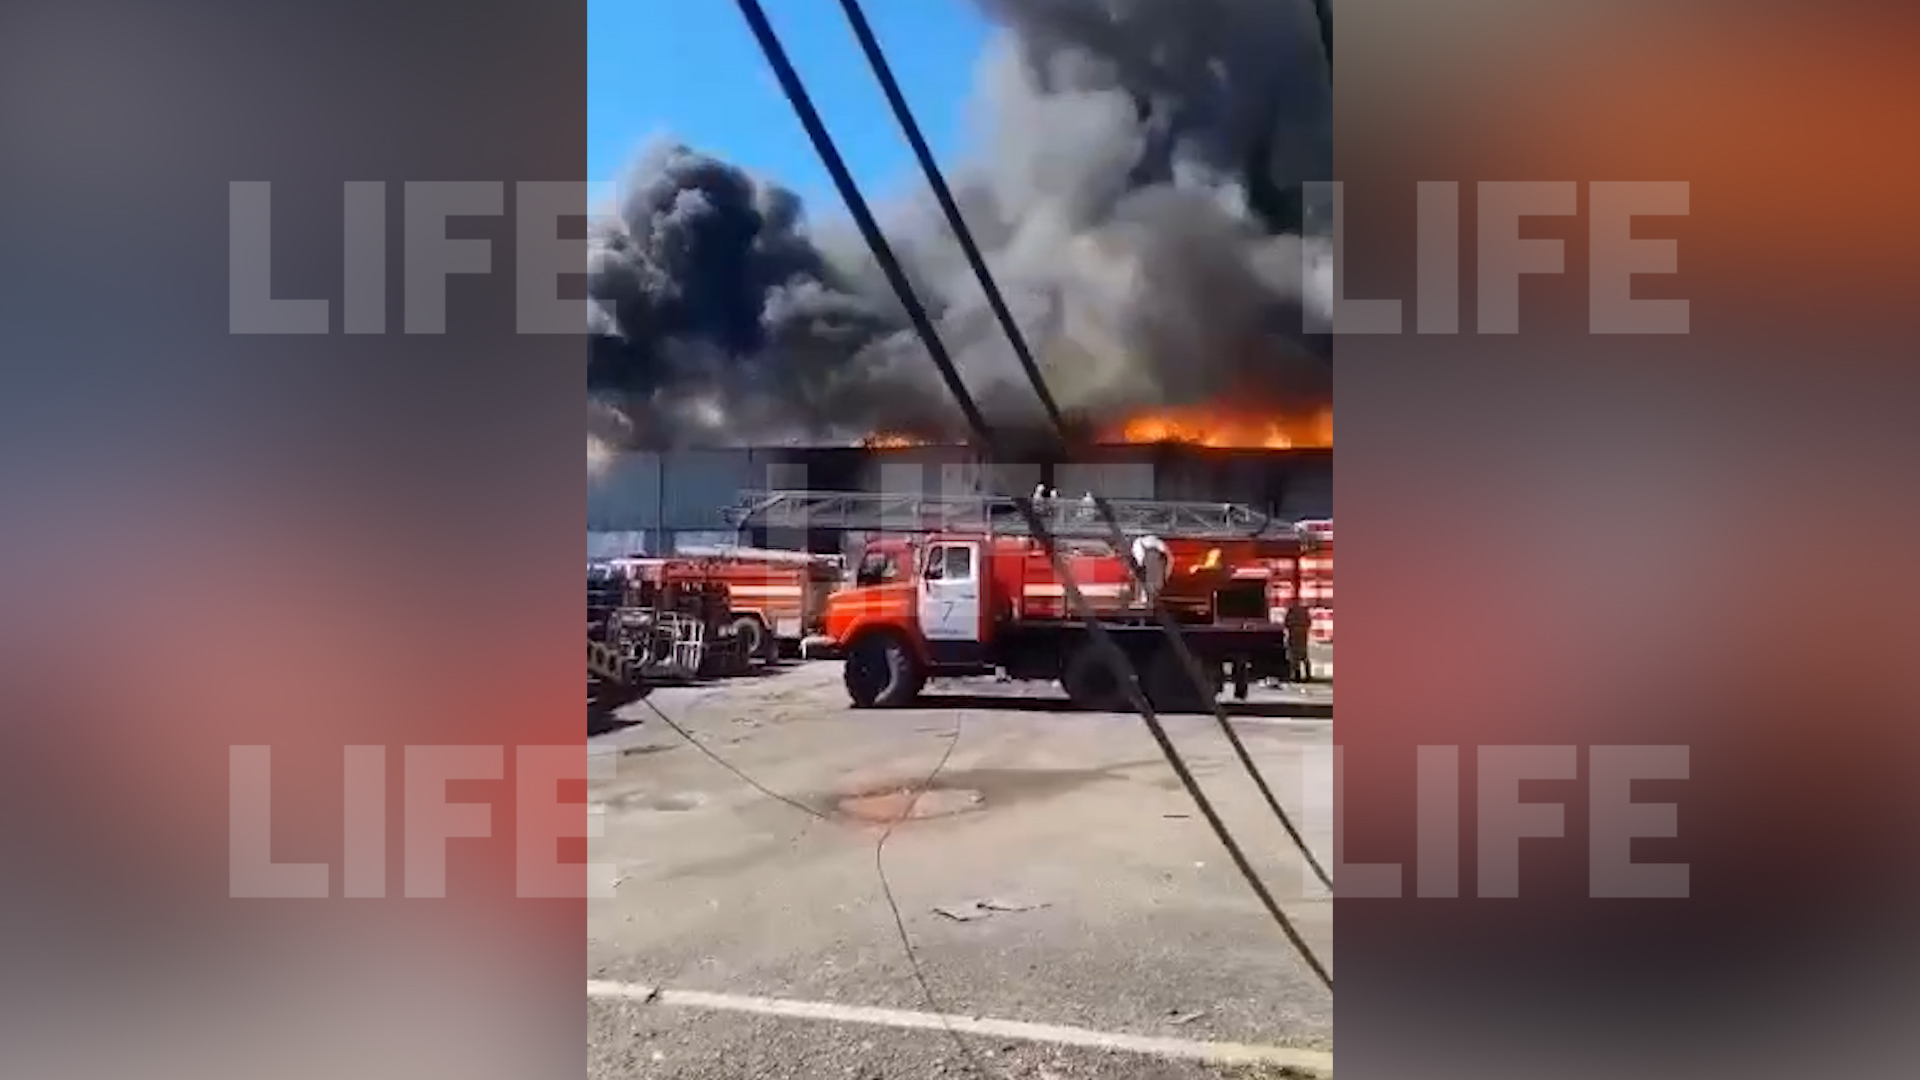 Лайф публикует эпичное видео пожара на складе в Комсомольске-на-Амуре